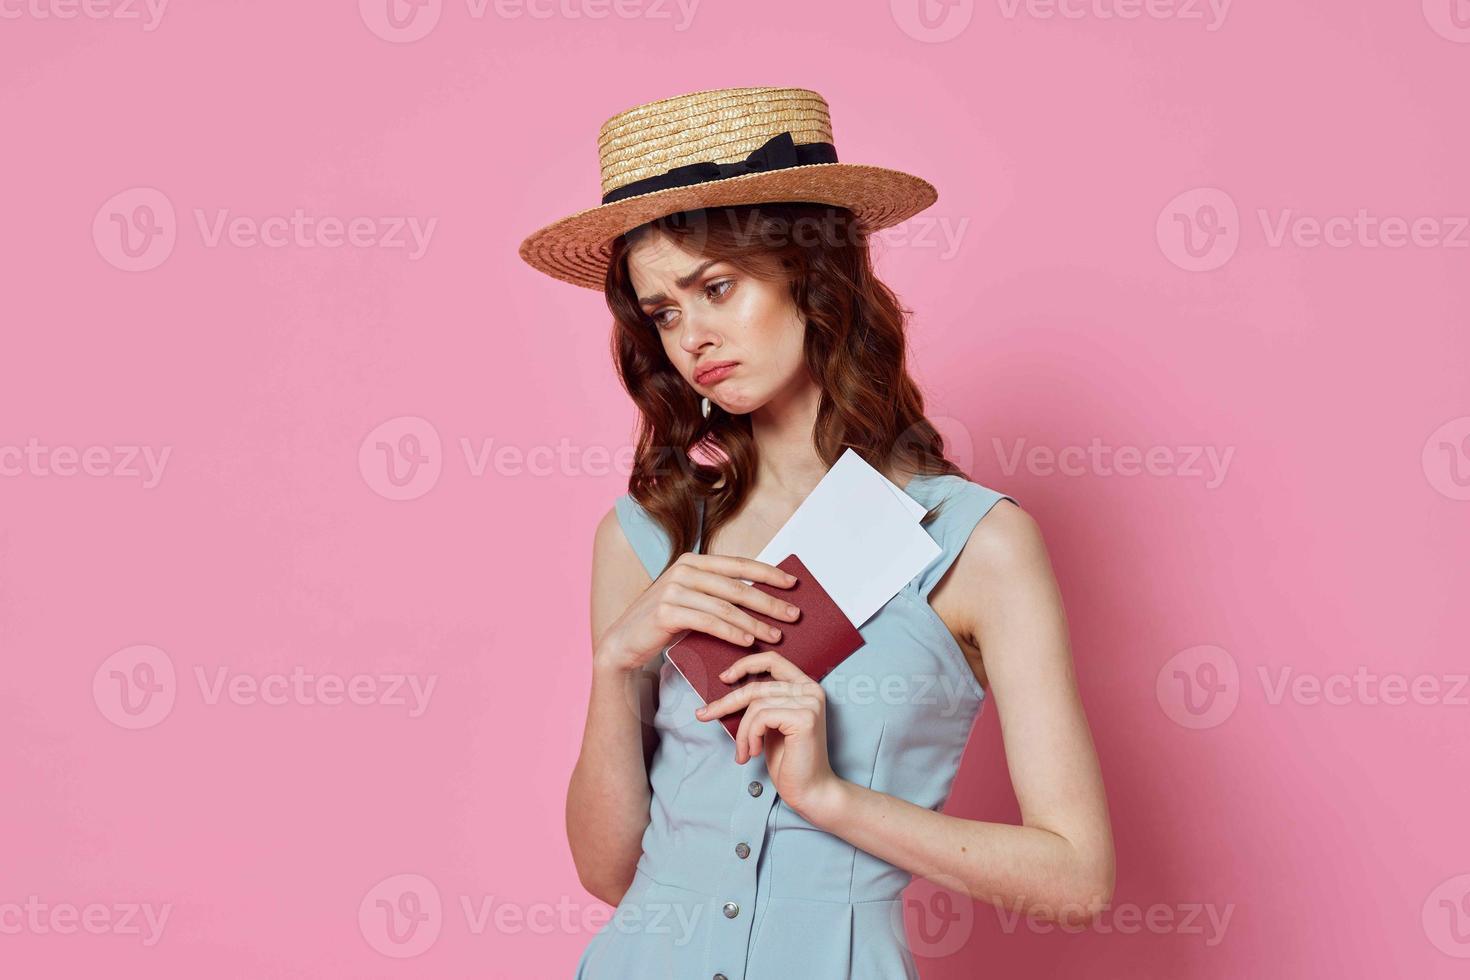 vrouw met hoed paspoort en vlak ticket luchthaven passagier roze achtergrond foto